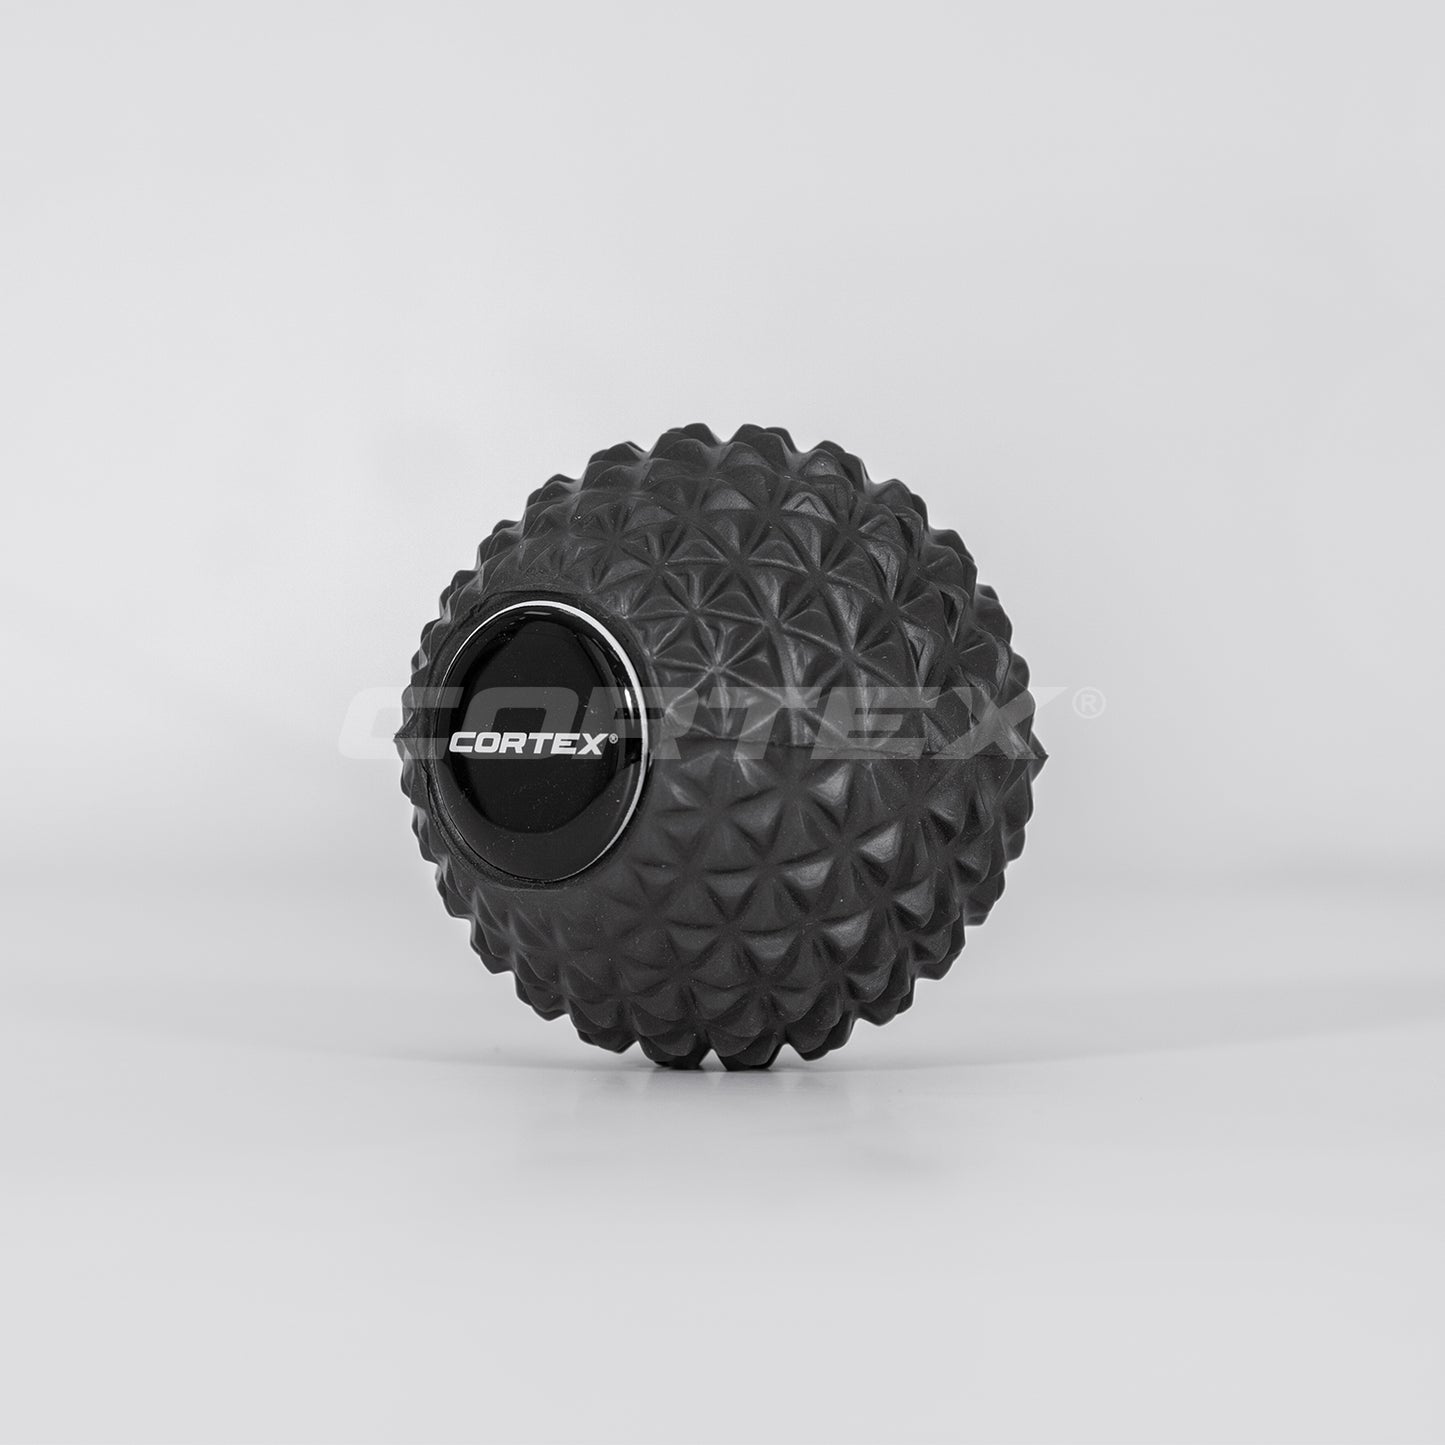 GridSoft EPP Foam Roller & Massage Ball (33x15cm)